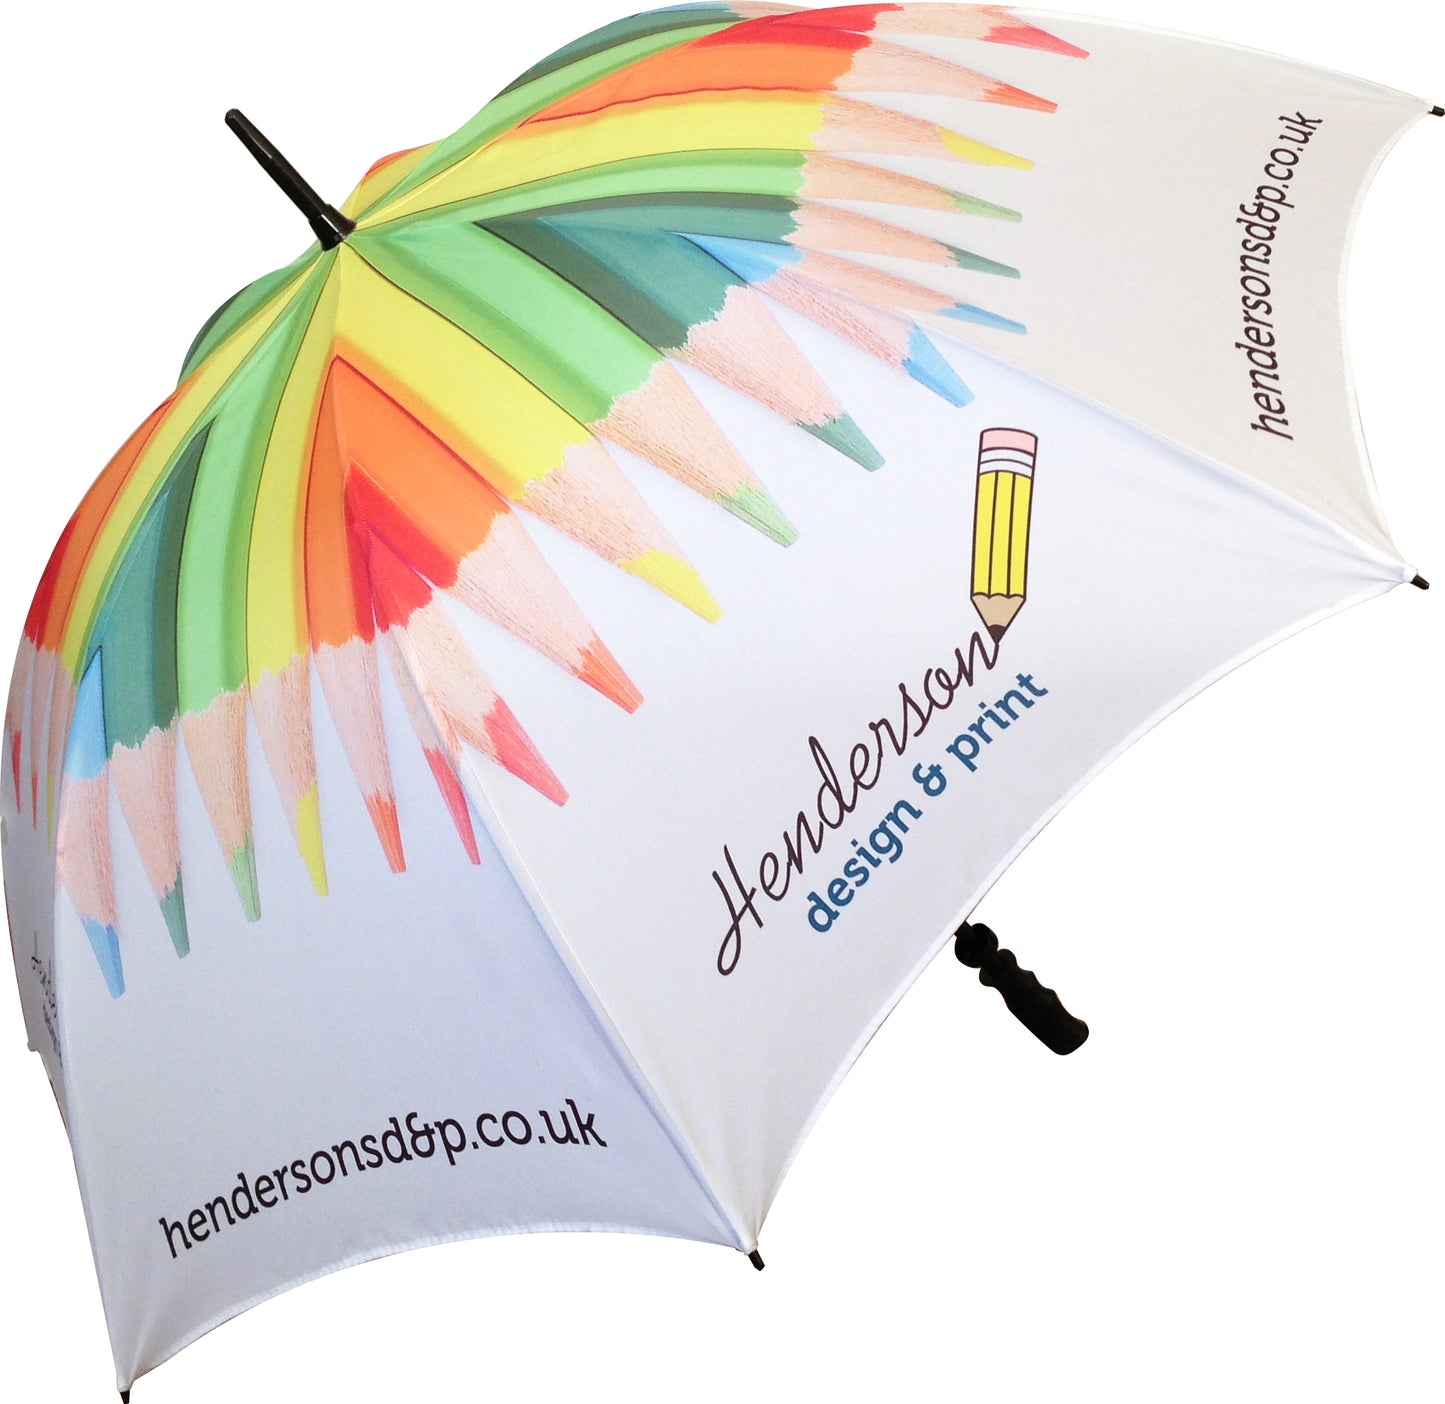 Premium UK Made Bespoke Golf Umbrella Umbrellas   